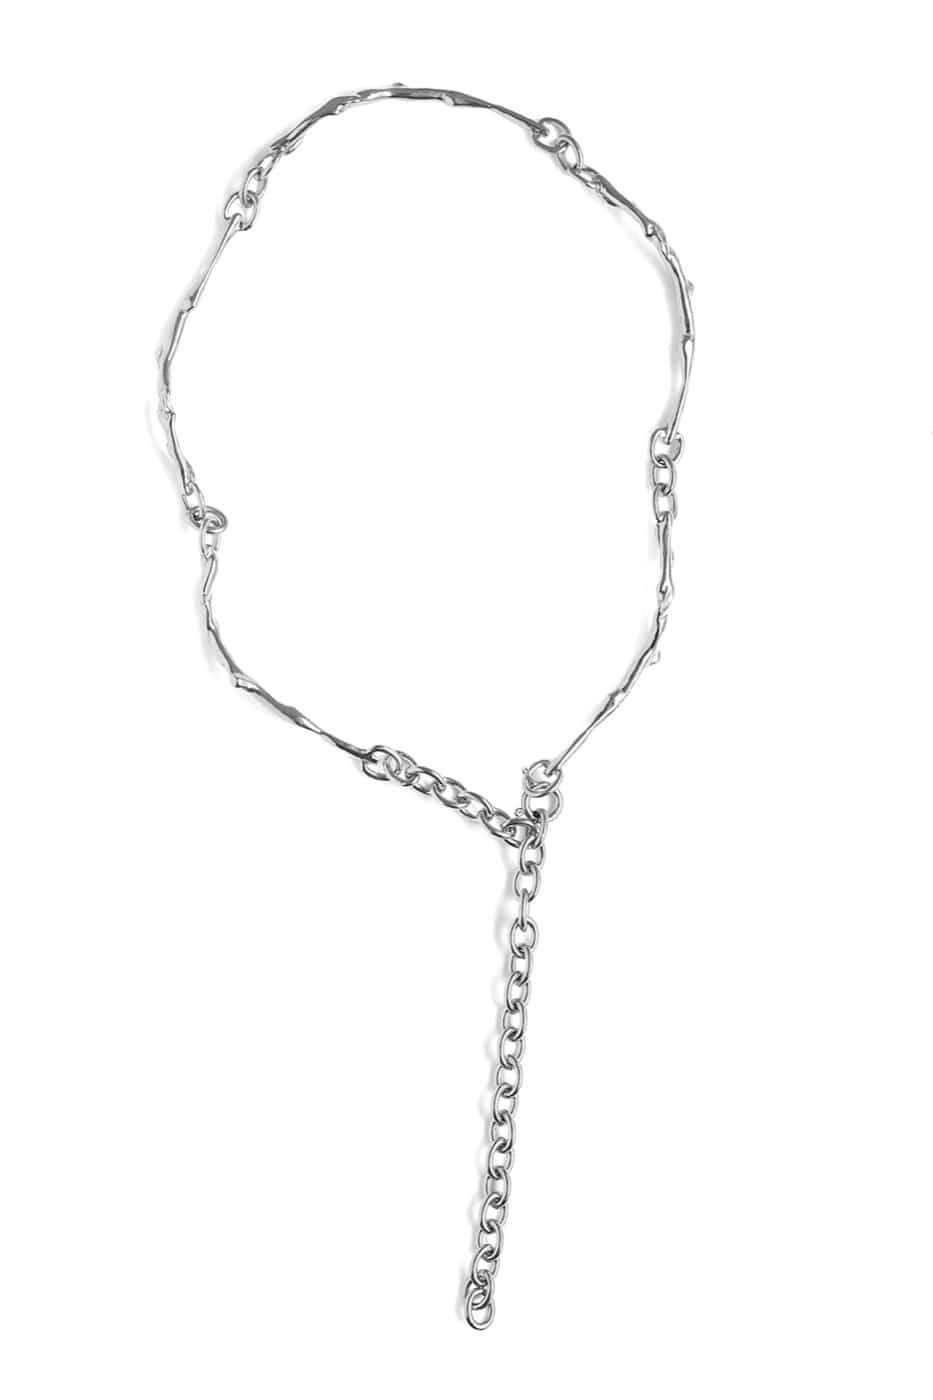 기본트렌드 Hustad #129 stems silver necklace_ 925 실버 줄기 네크리스  자체제작 국내 